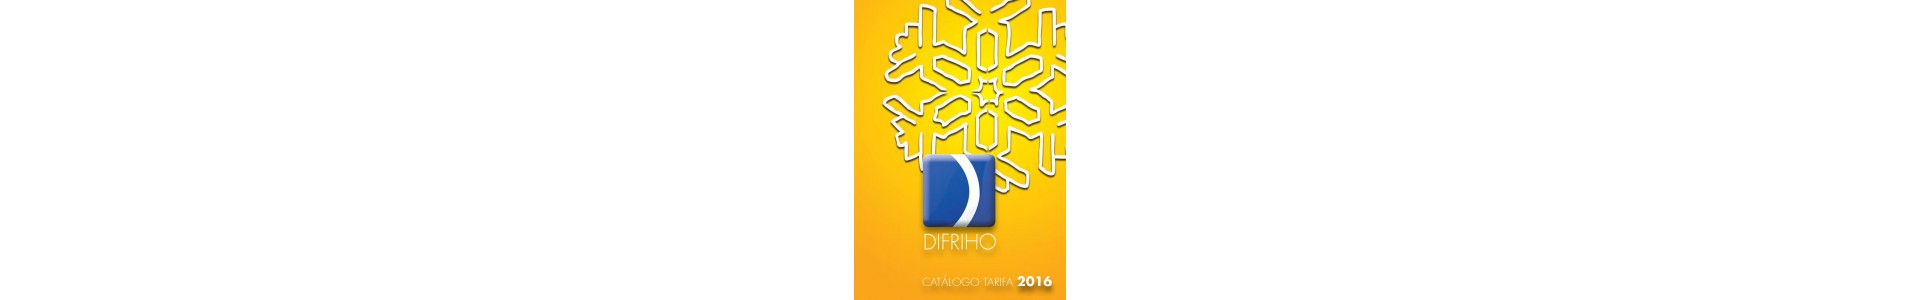 DFRIHO 2016